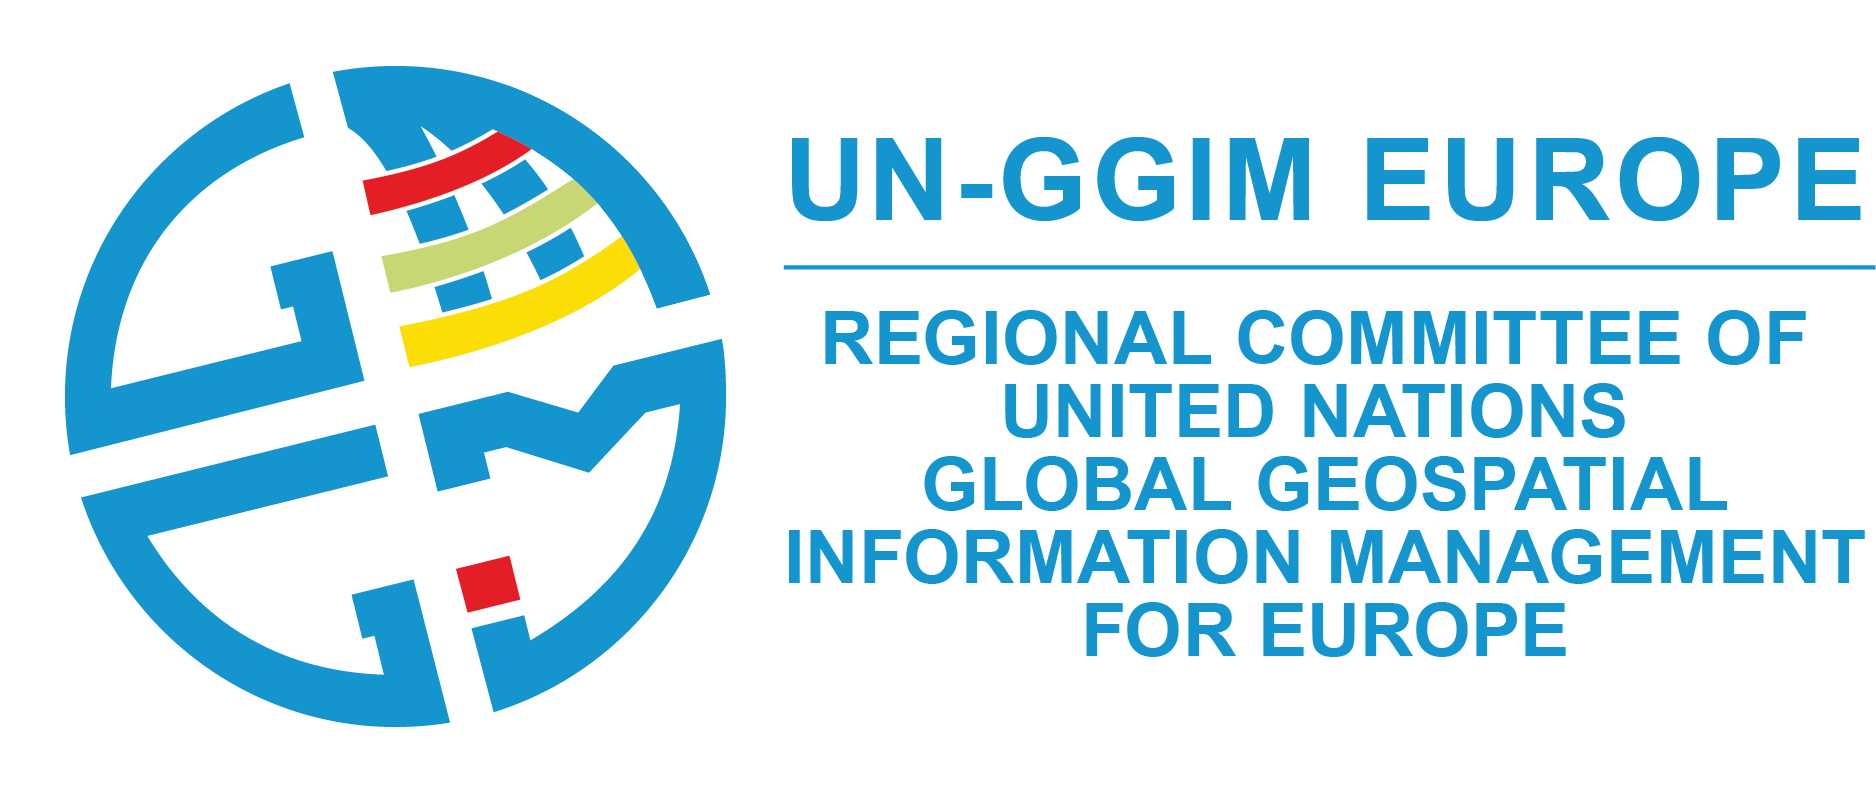 UN-GGIM Europe